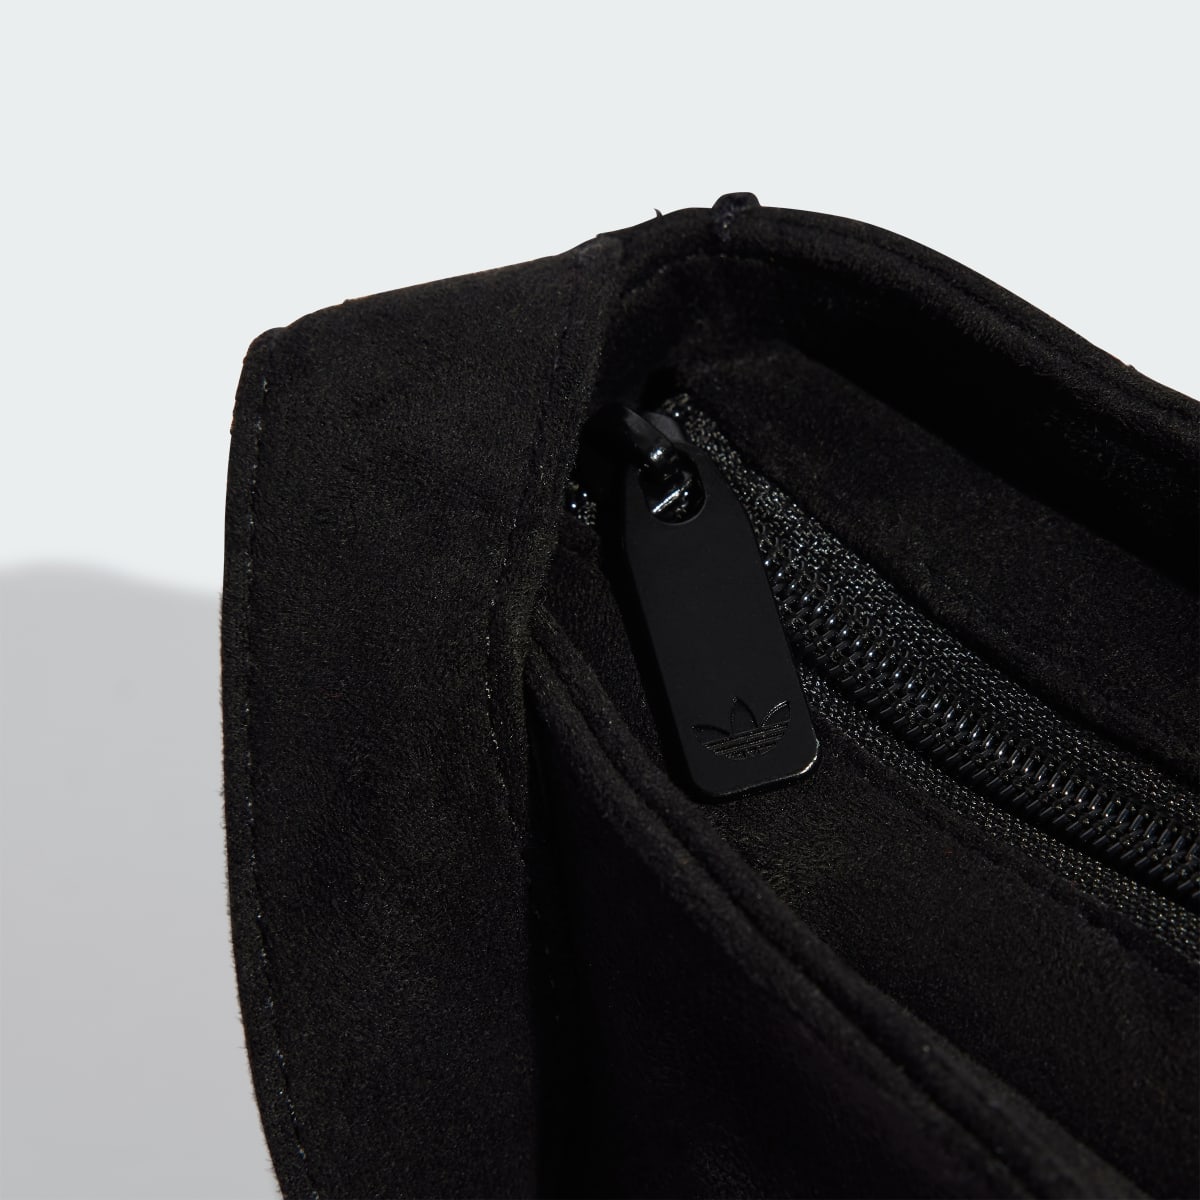 Adidas Rhinestones Fake Suede Shoulder Bag. 5